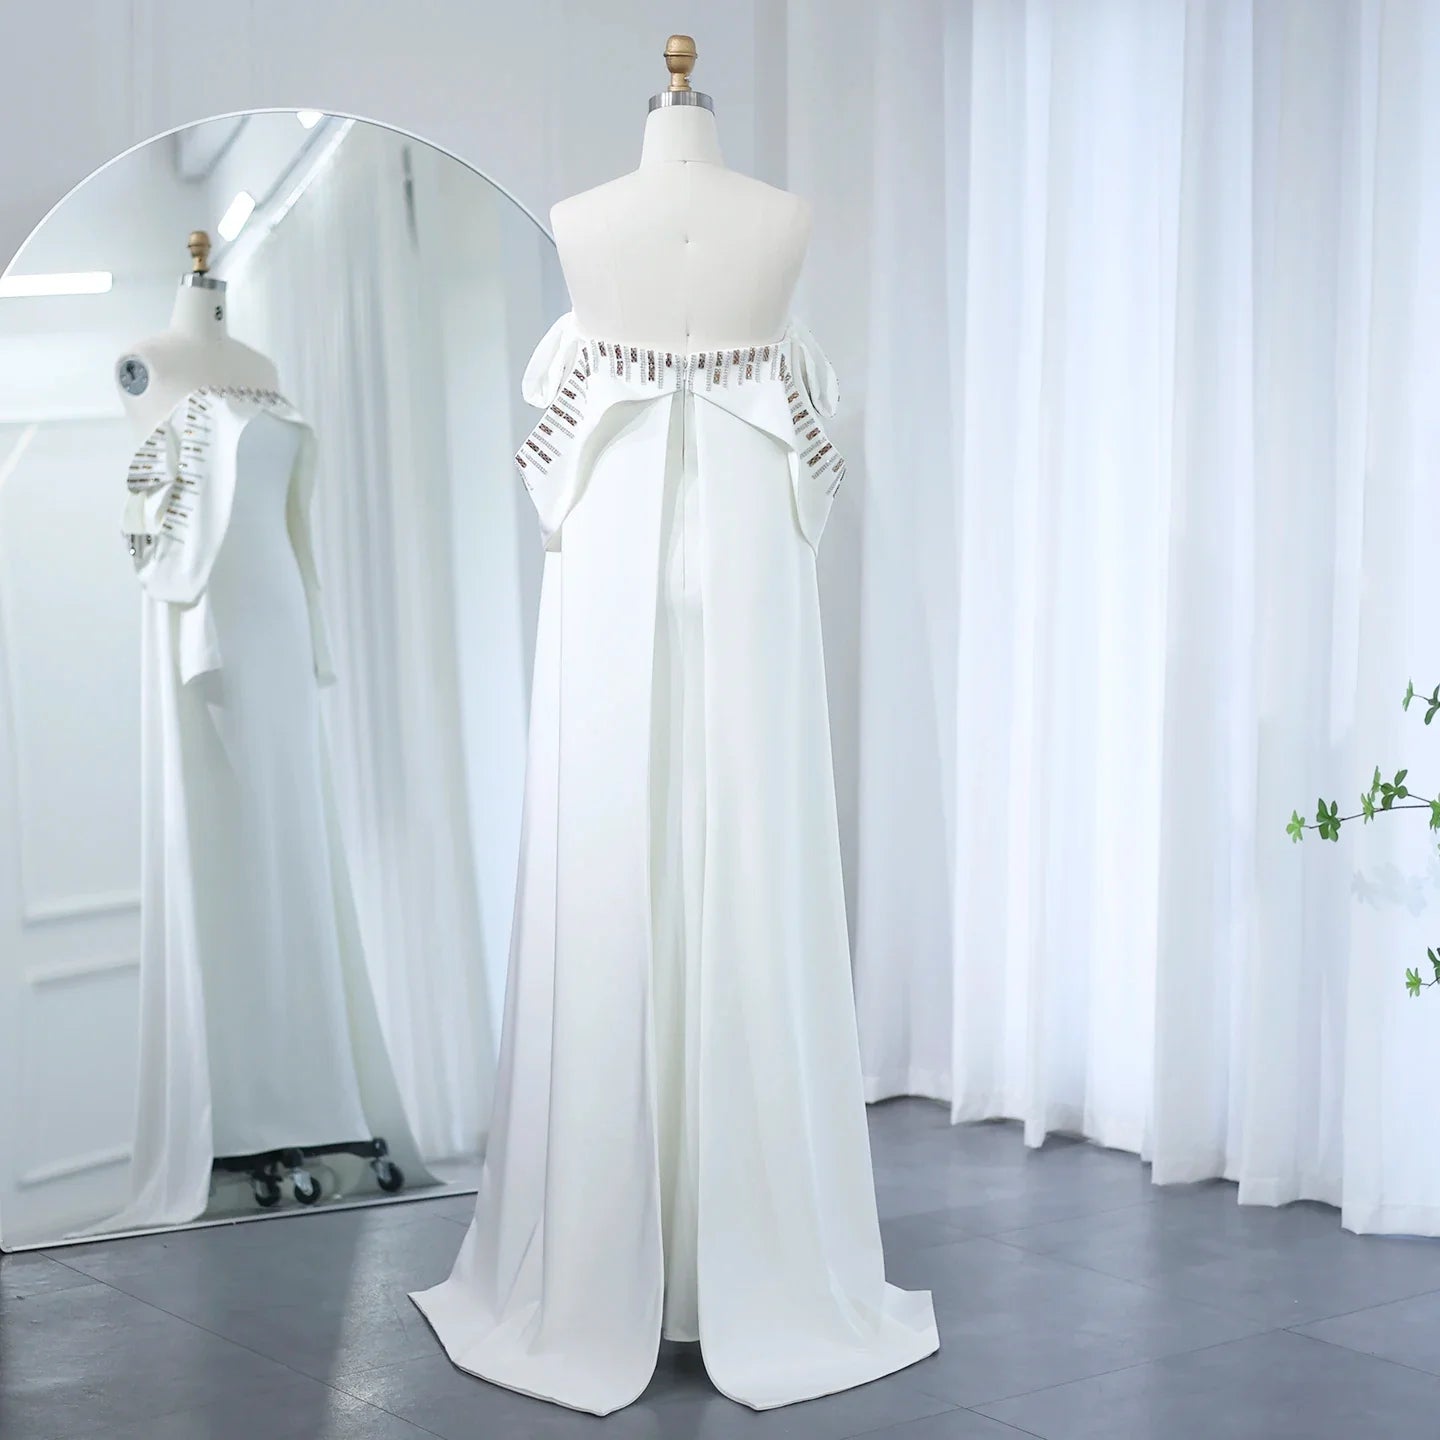 Elegancka biała syrenka Dubai wieczorowa sukienka z peleryną długi